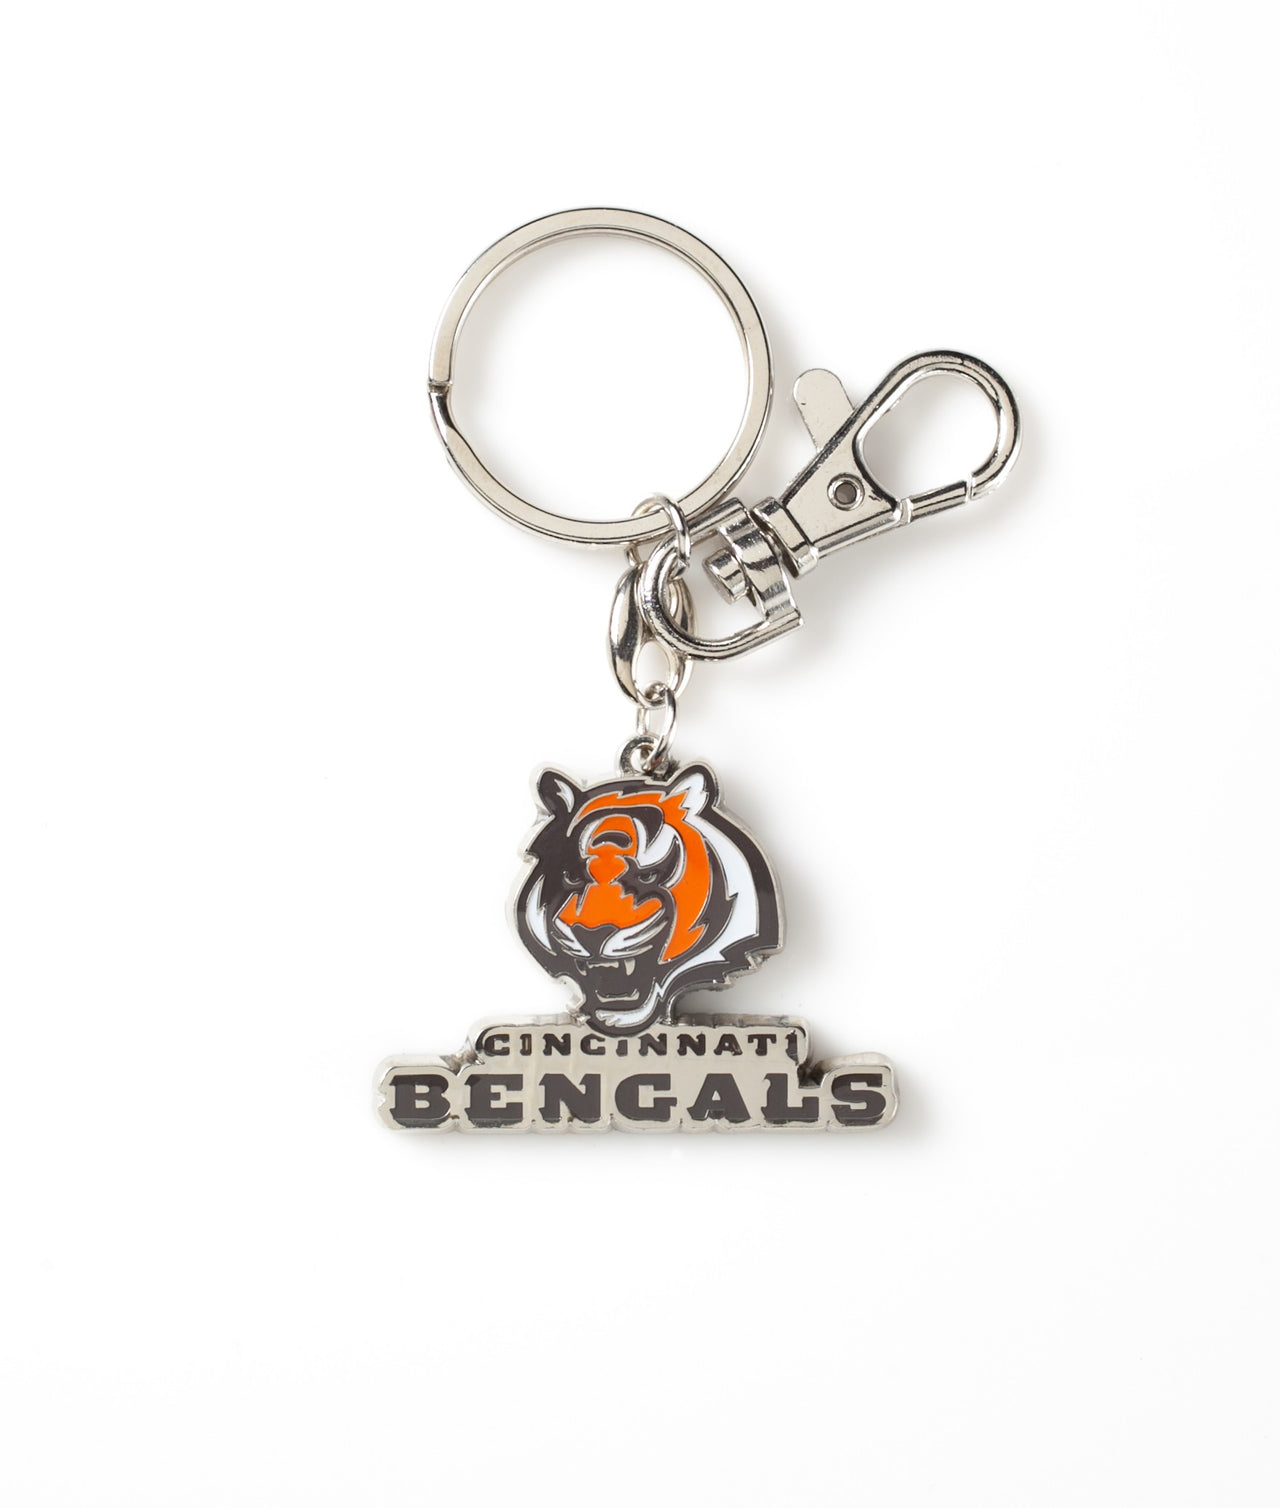 Cincinnati Bengals Heavyweight Keychain - Dynasty Sports & Framing 